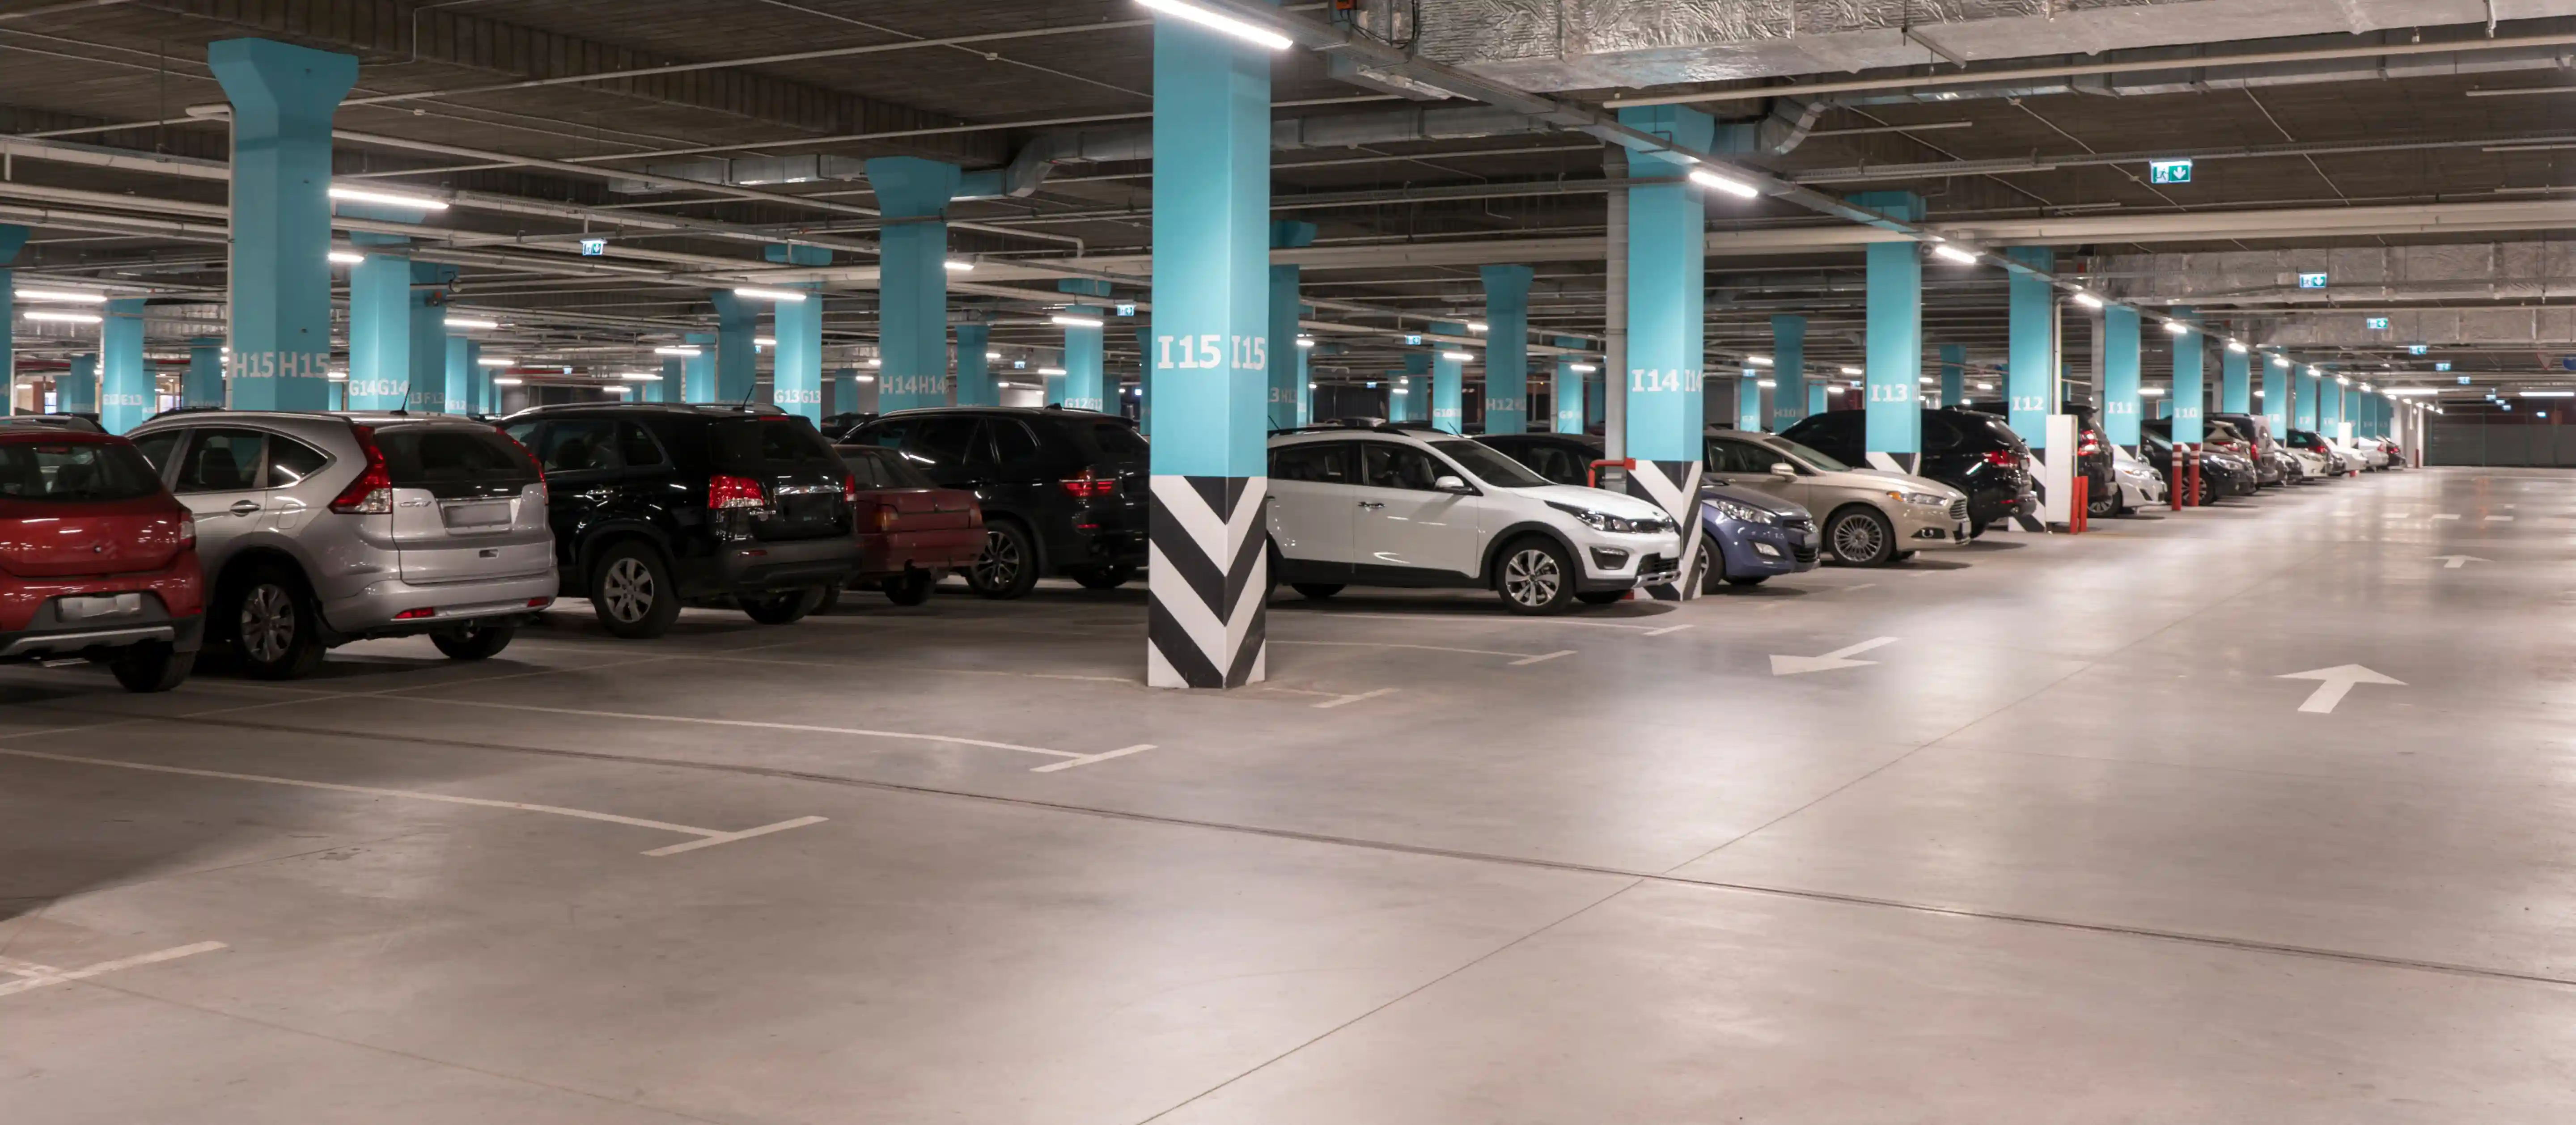 Overdekte parkeerplaats met auto's